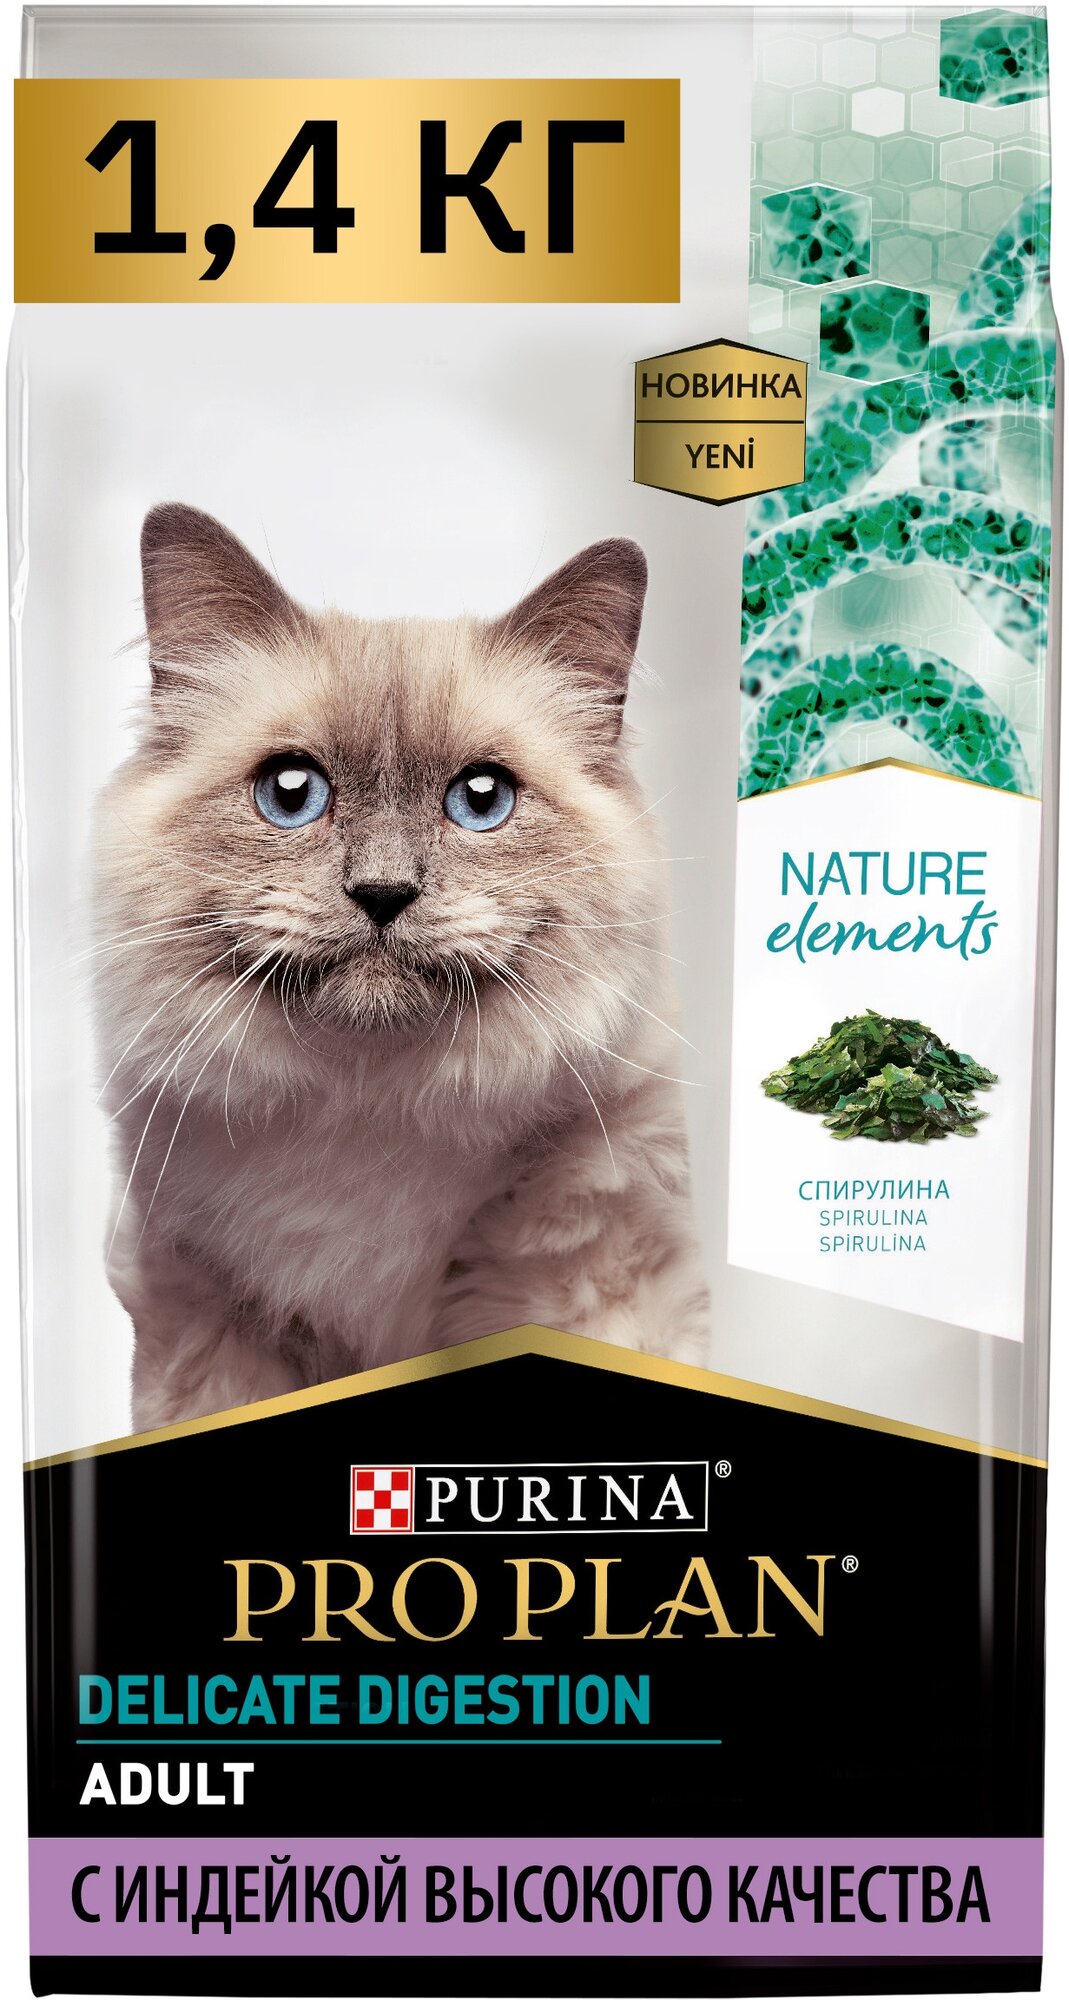 Pro Plan Nature Elements корм для взрослых кошек с чувствительным пищеварением Индейка, 1,4 кг.